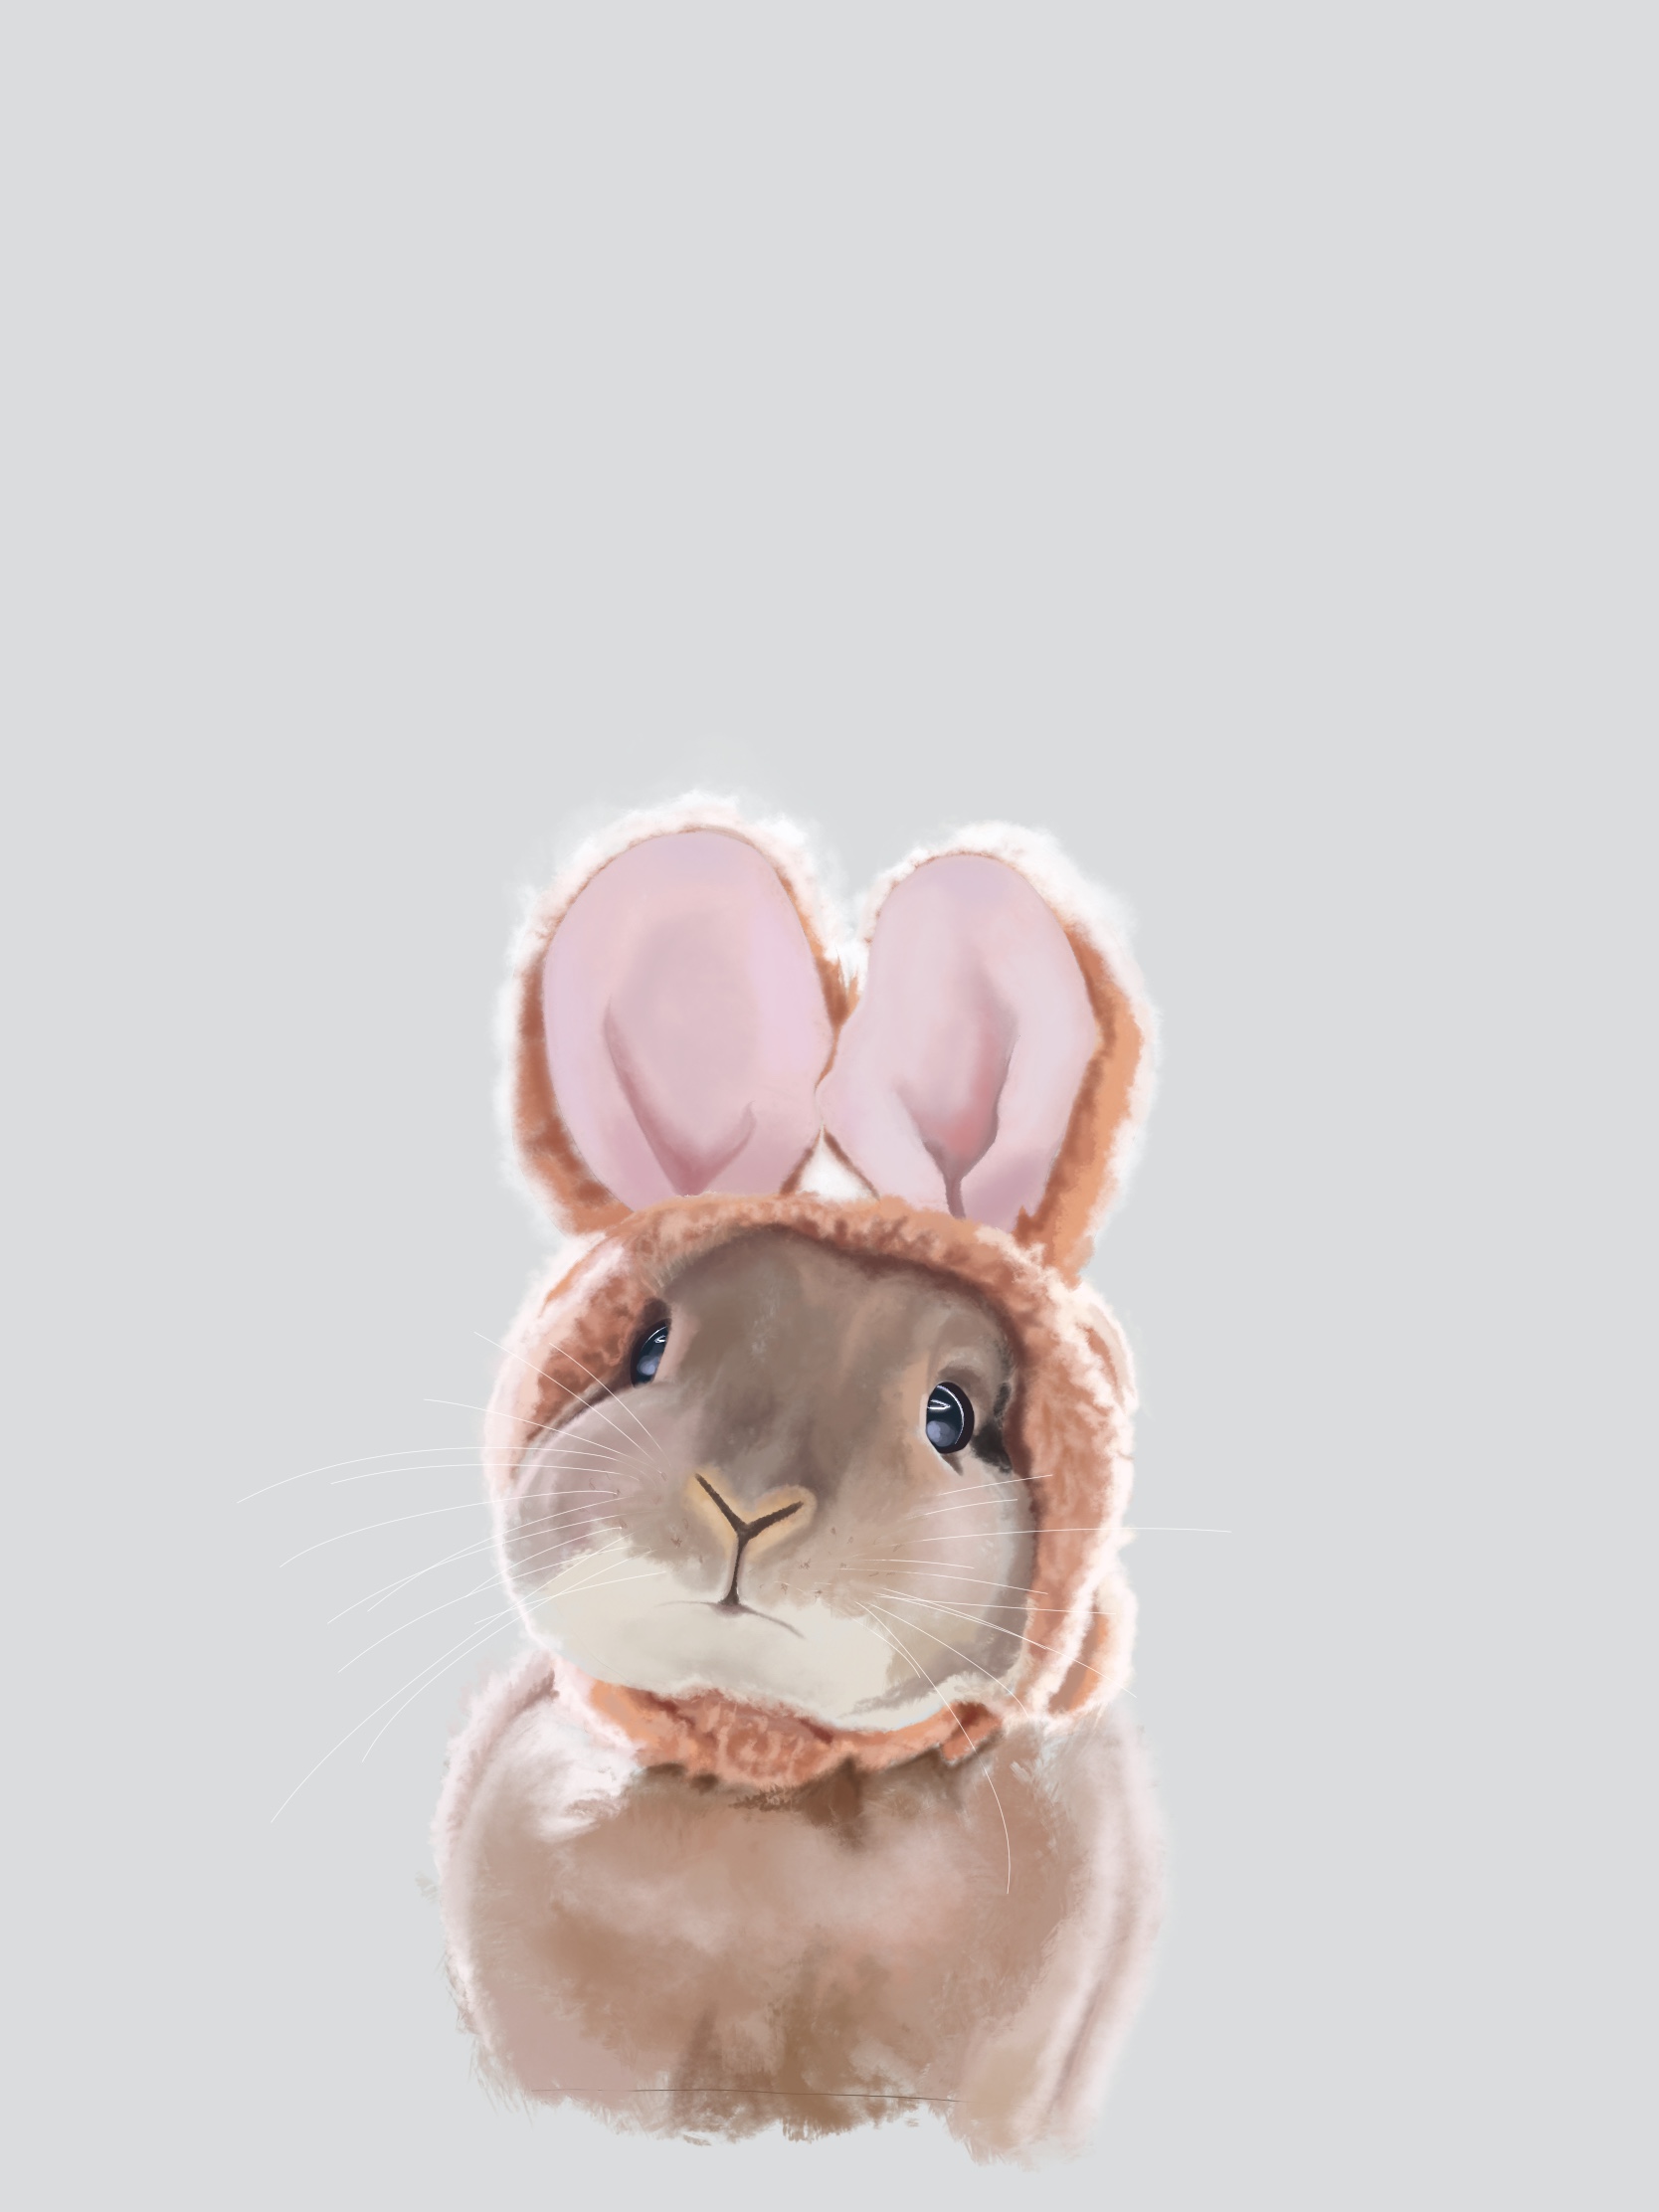 Самые красивые картинки кроликов